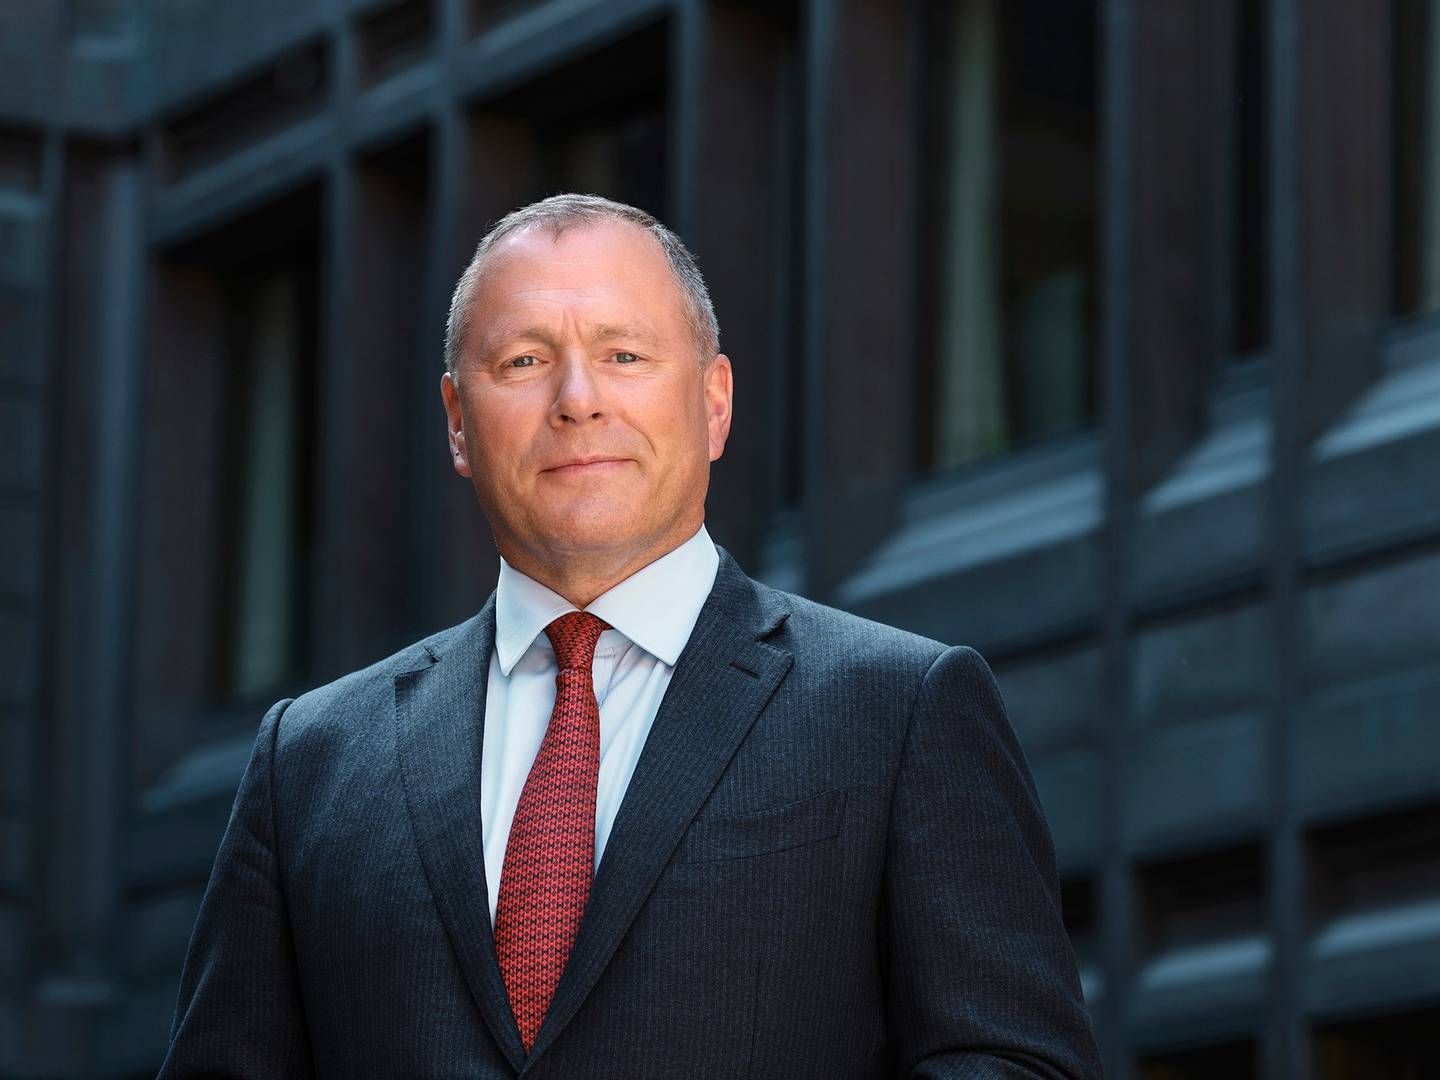 FINANSKURS: Leder i Norges Bank Investment Management, Nicolai Tangen, håper at masterkurset «Internship i kapitalforvaltning» kan bidra til å styrke kapitalforvaltningsmiljøet i Norge. De er en av 15 bedrifter som vil tilby internship som en del av kurset.